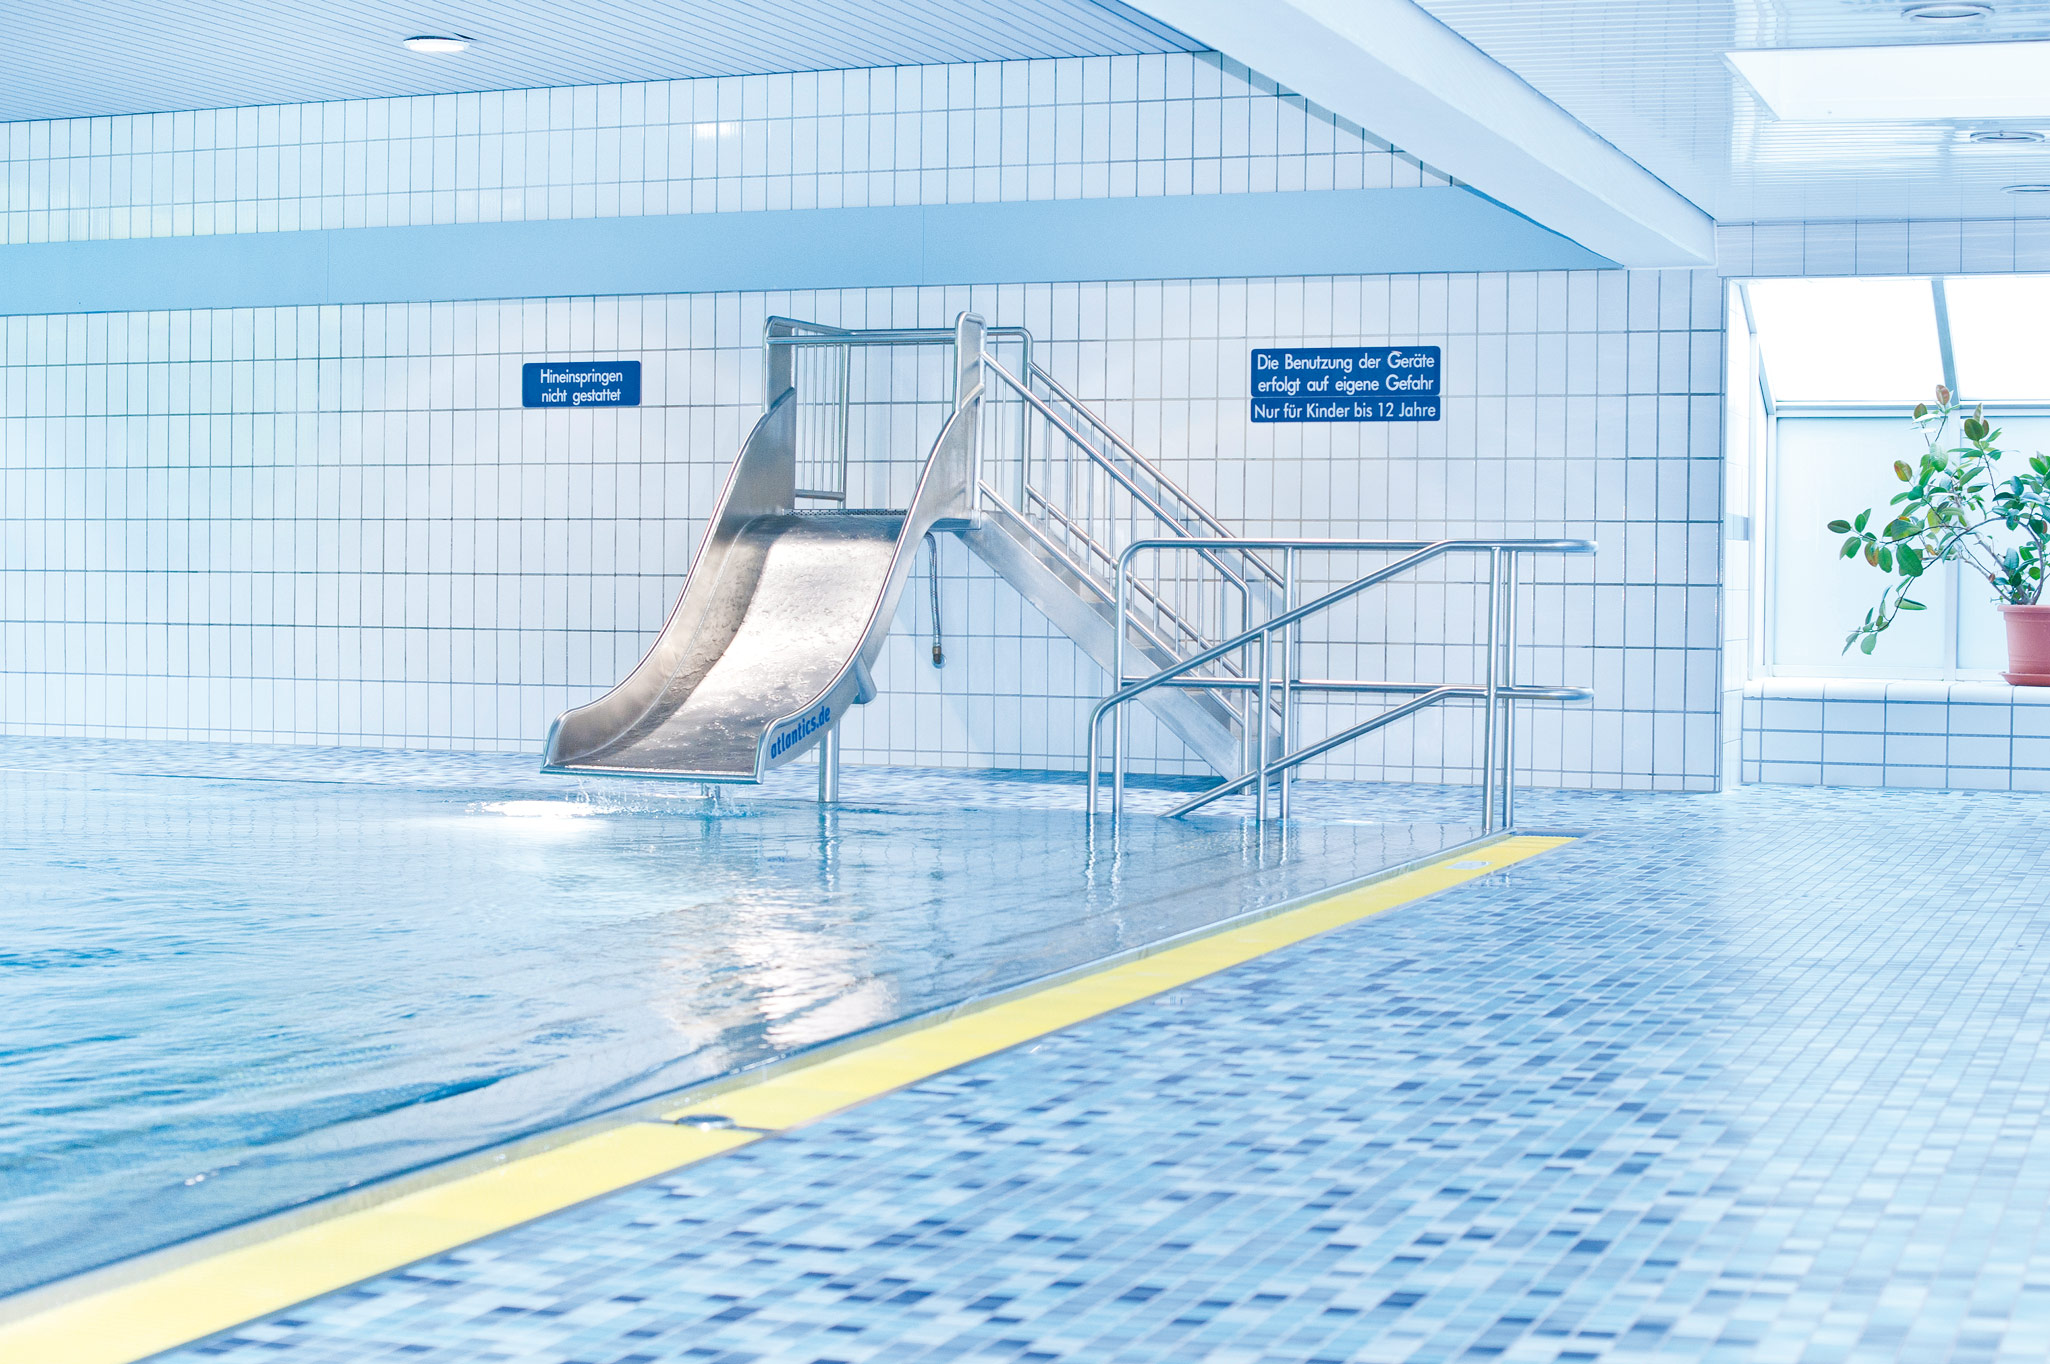 Hallenbathroomslide atlantics stainless steel slides indoor pool buettgen northrhein westfalen indoorwater boxwater pool 096888